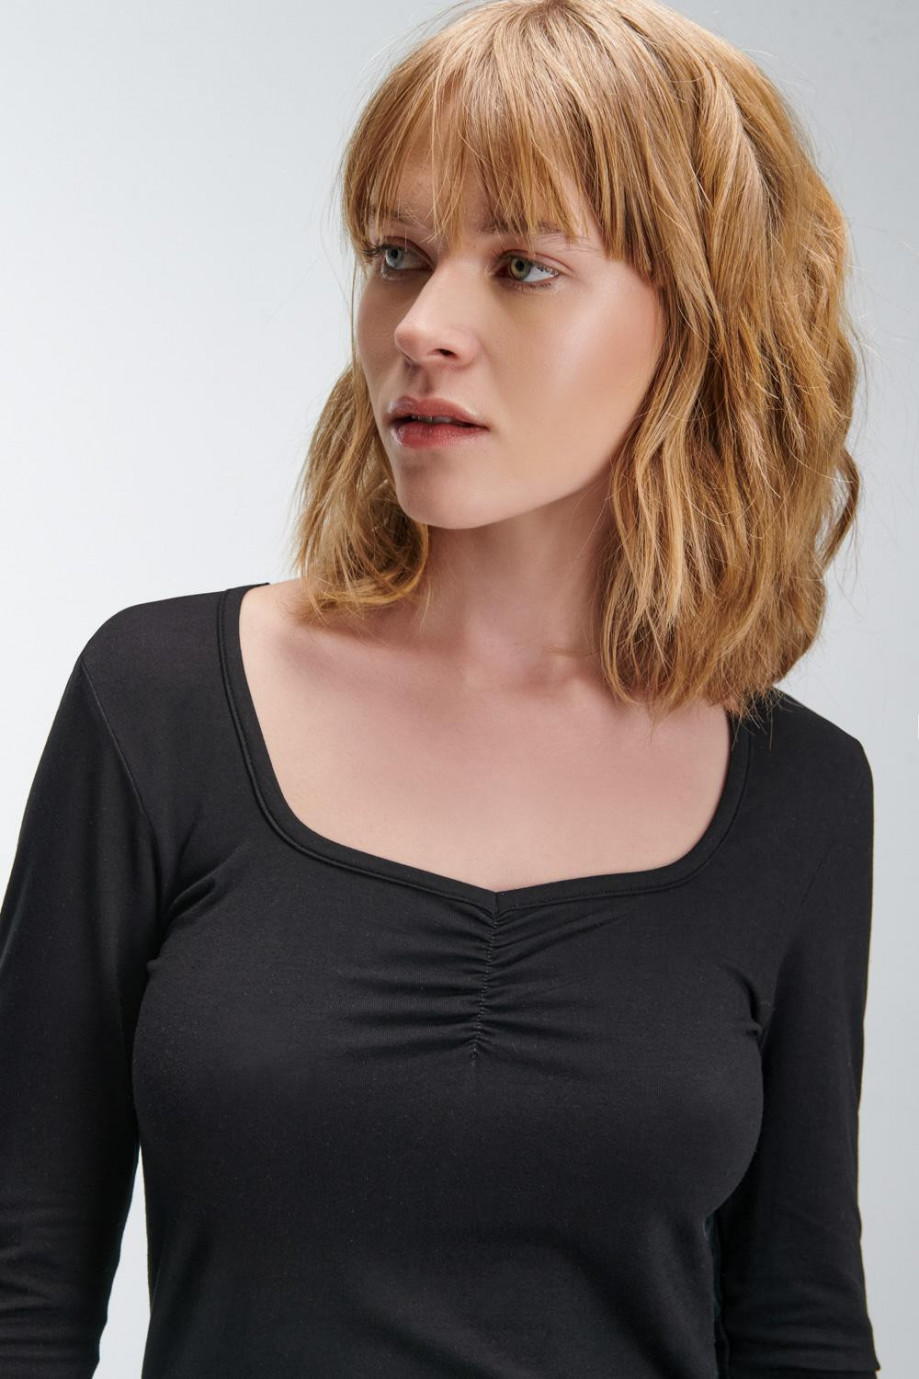 Camiseta estampada, manga larga con cuello redondo.